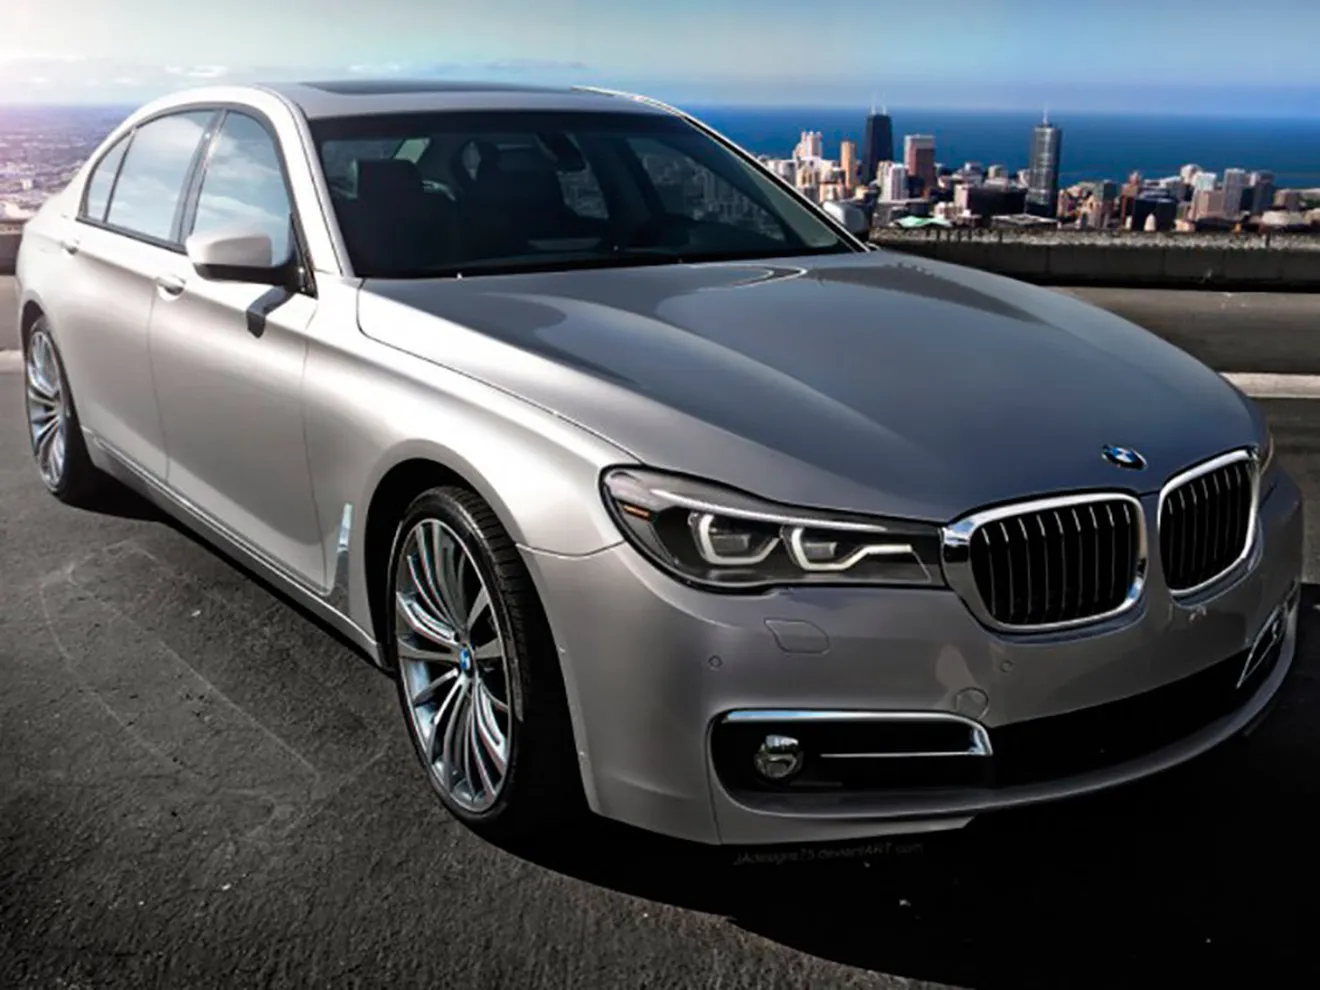 BMW Serie 7 2015, así podría ser la nueva berlina representativa alemana